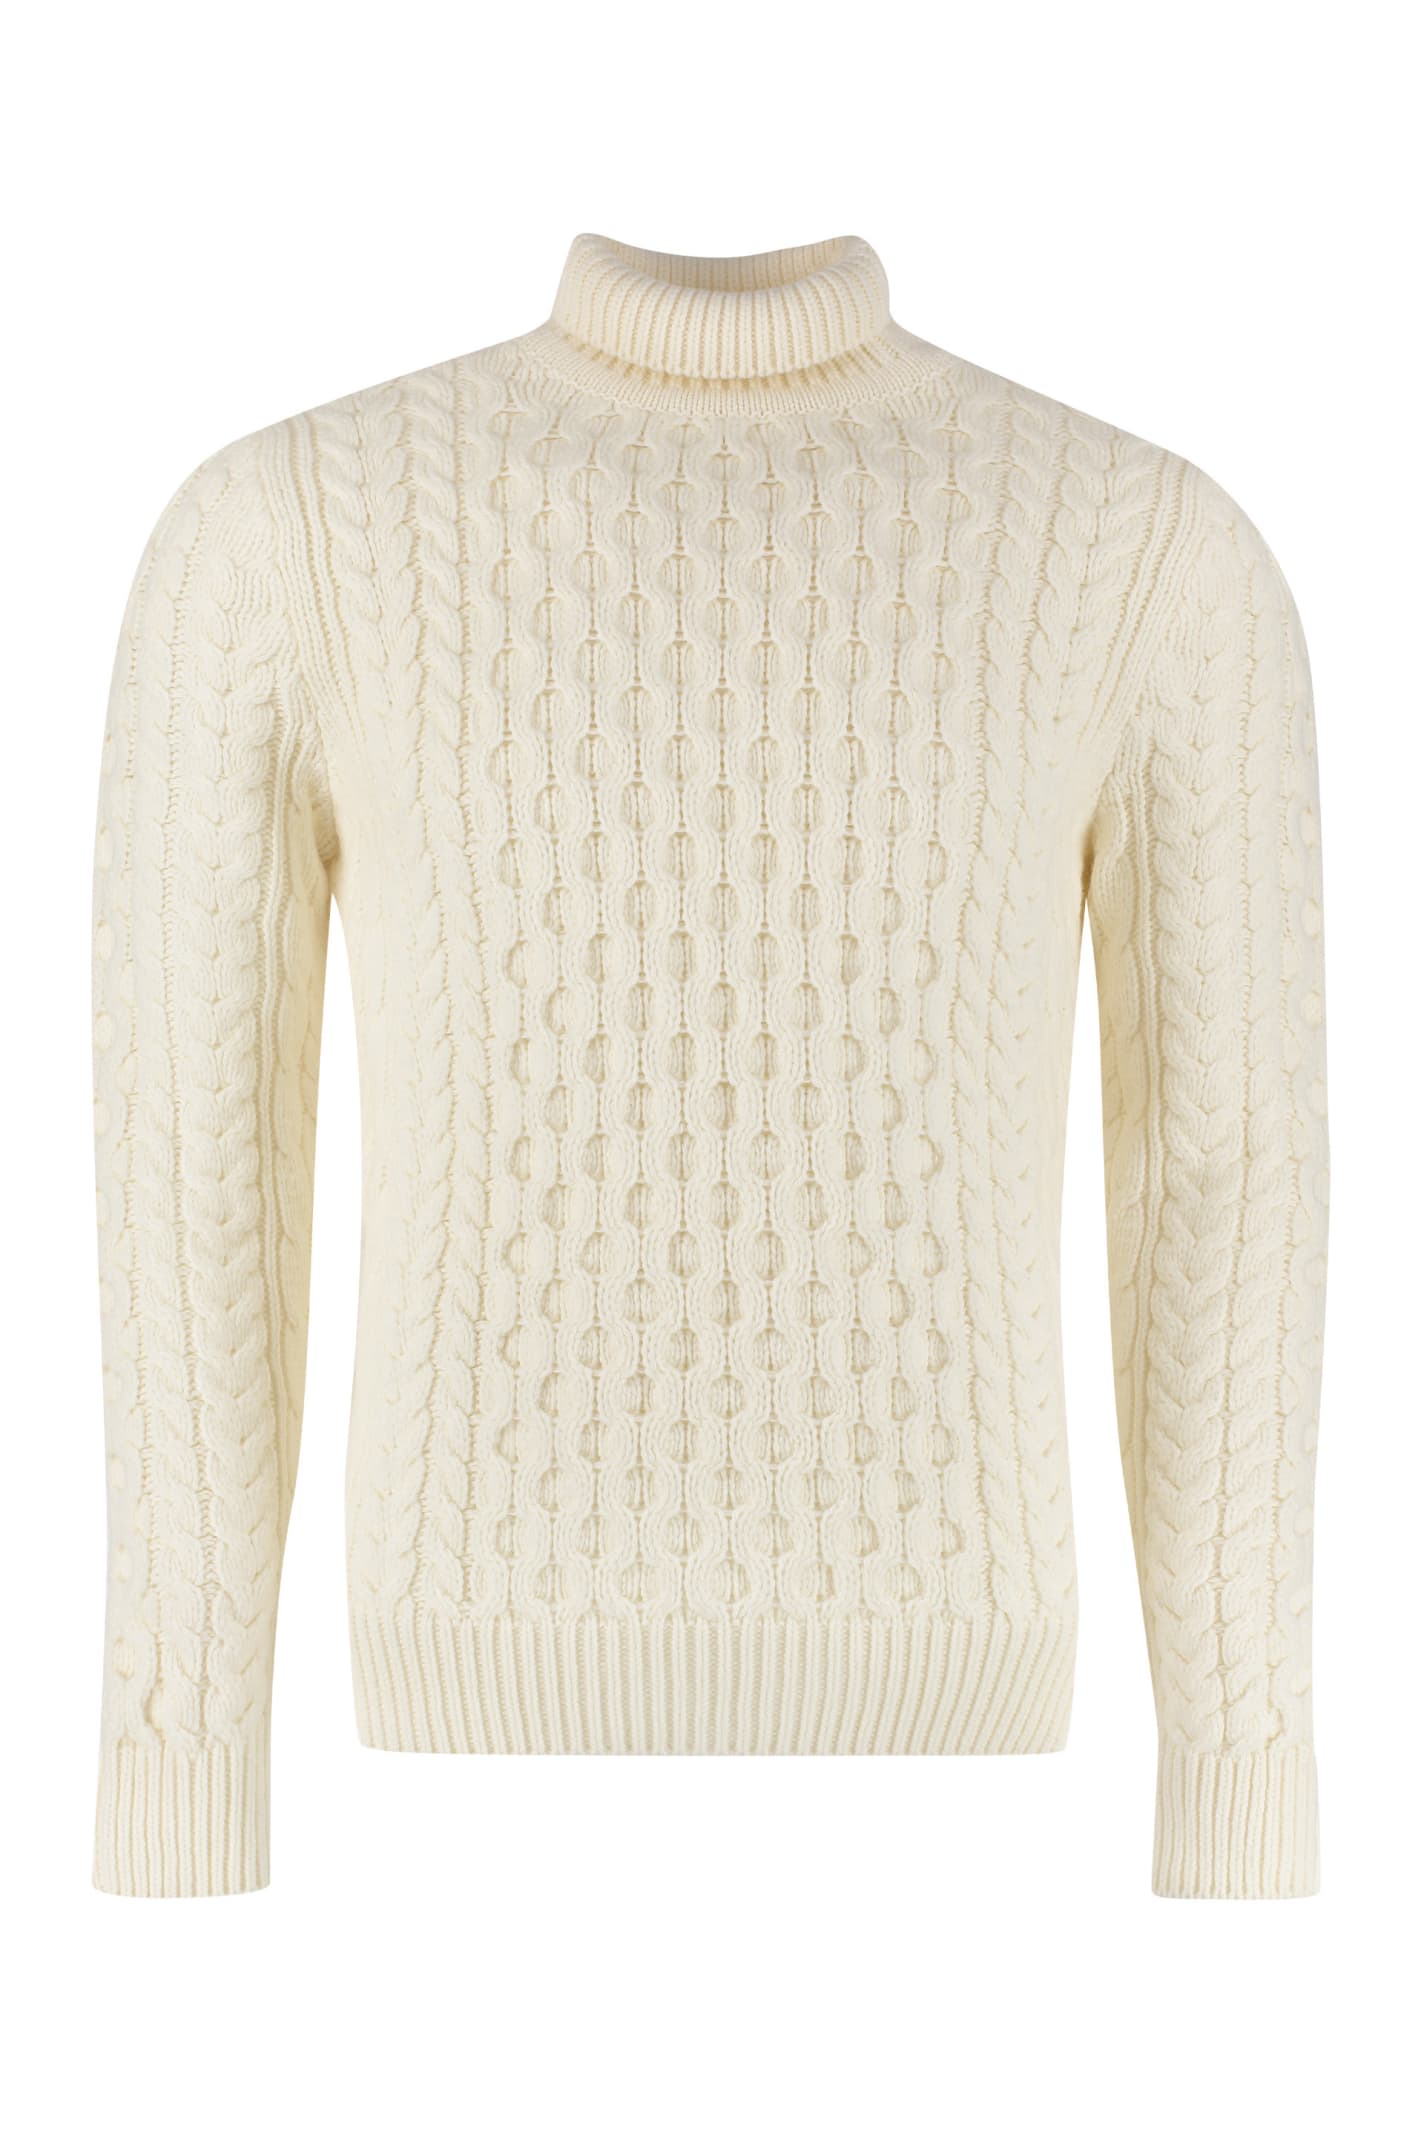 Alexander McQueen Wool Turtleneck Sweater